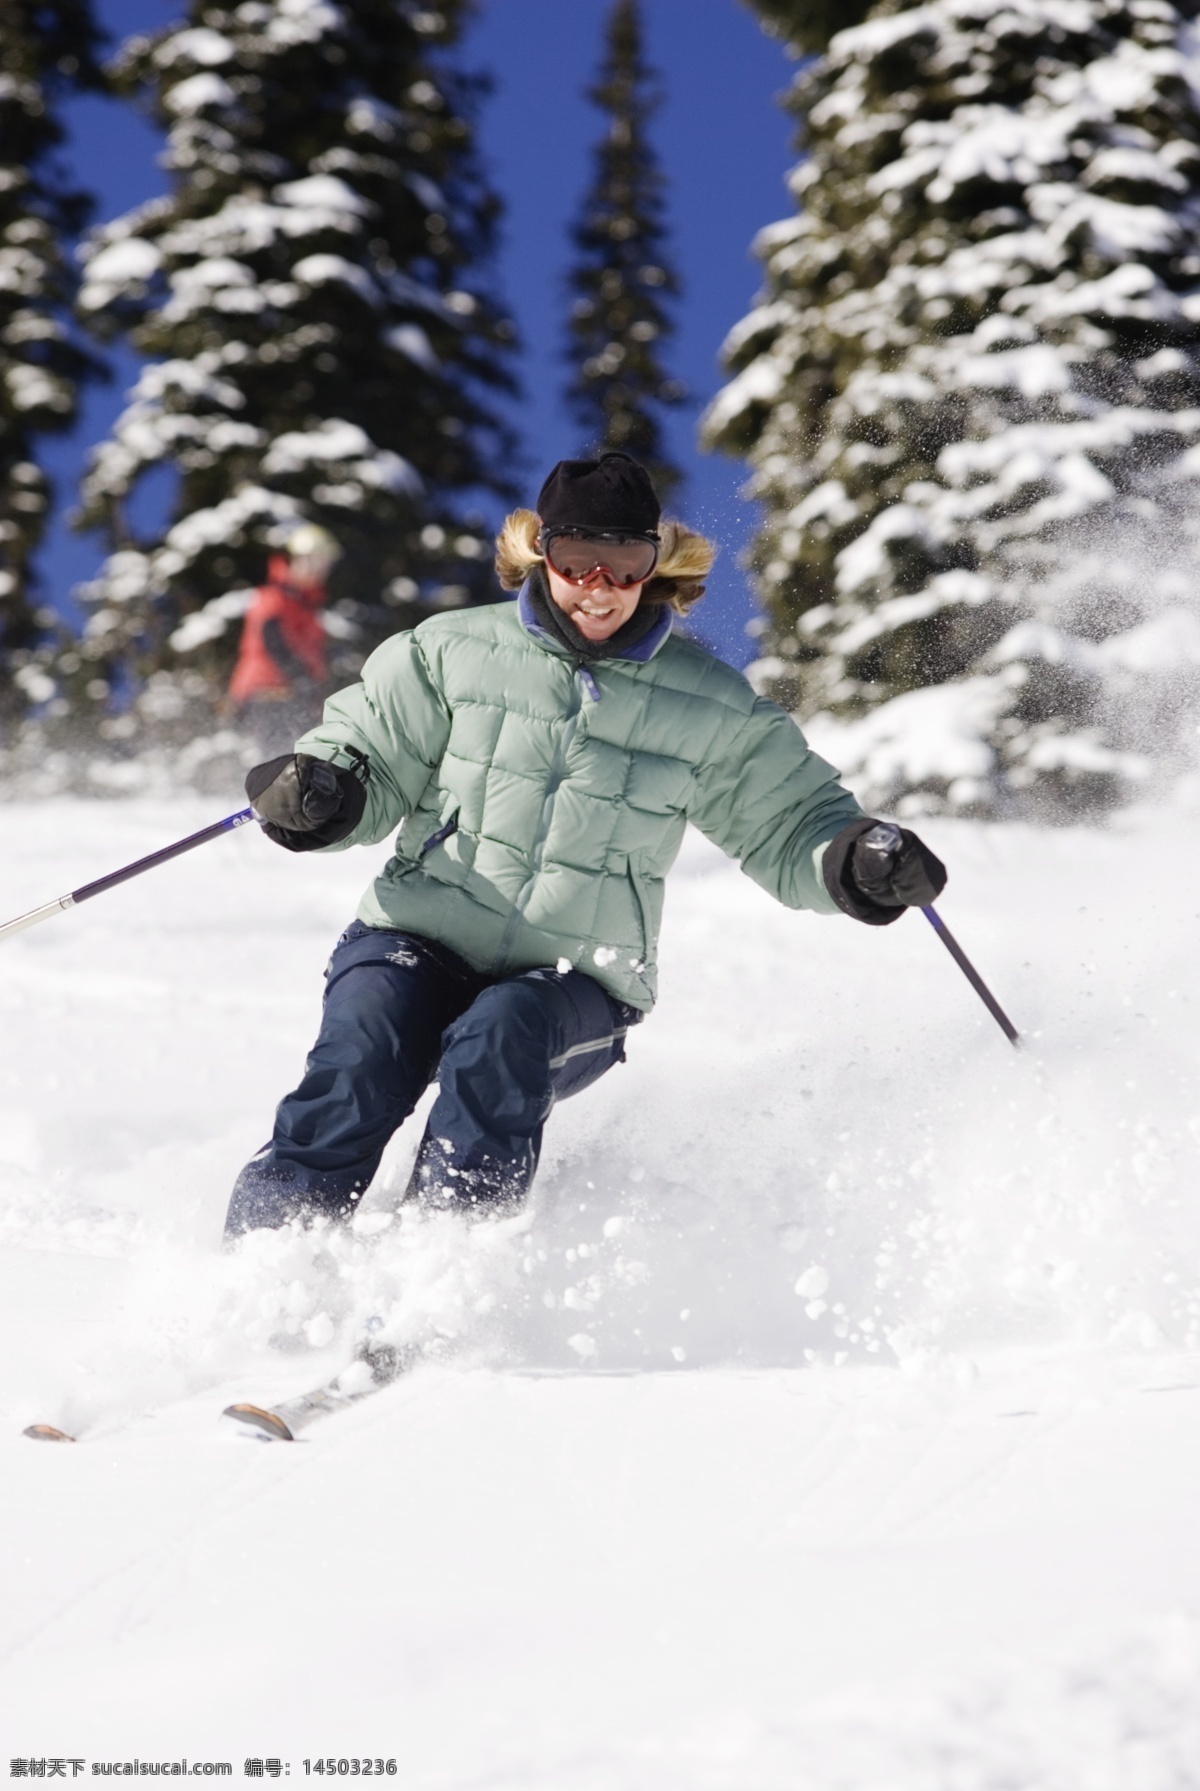 滑雪 运动员 高清 冬天 雪地运动 划雪运动 极限运动 体育项目 下滑 速度 运动图片 生活百科 雪山 美丽 雪景 风景 摄影图片 高清图片 体育运动 白色